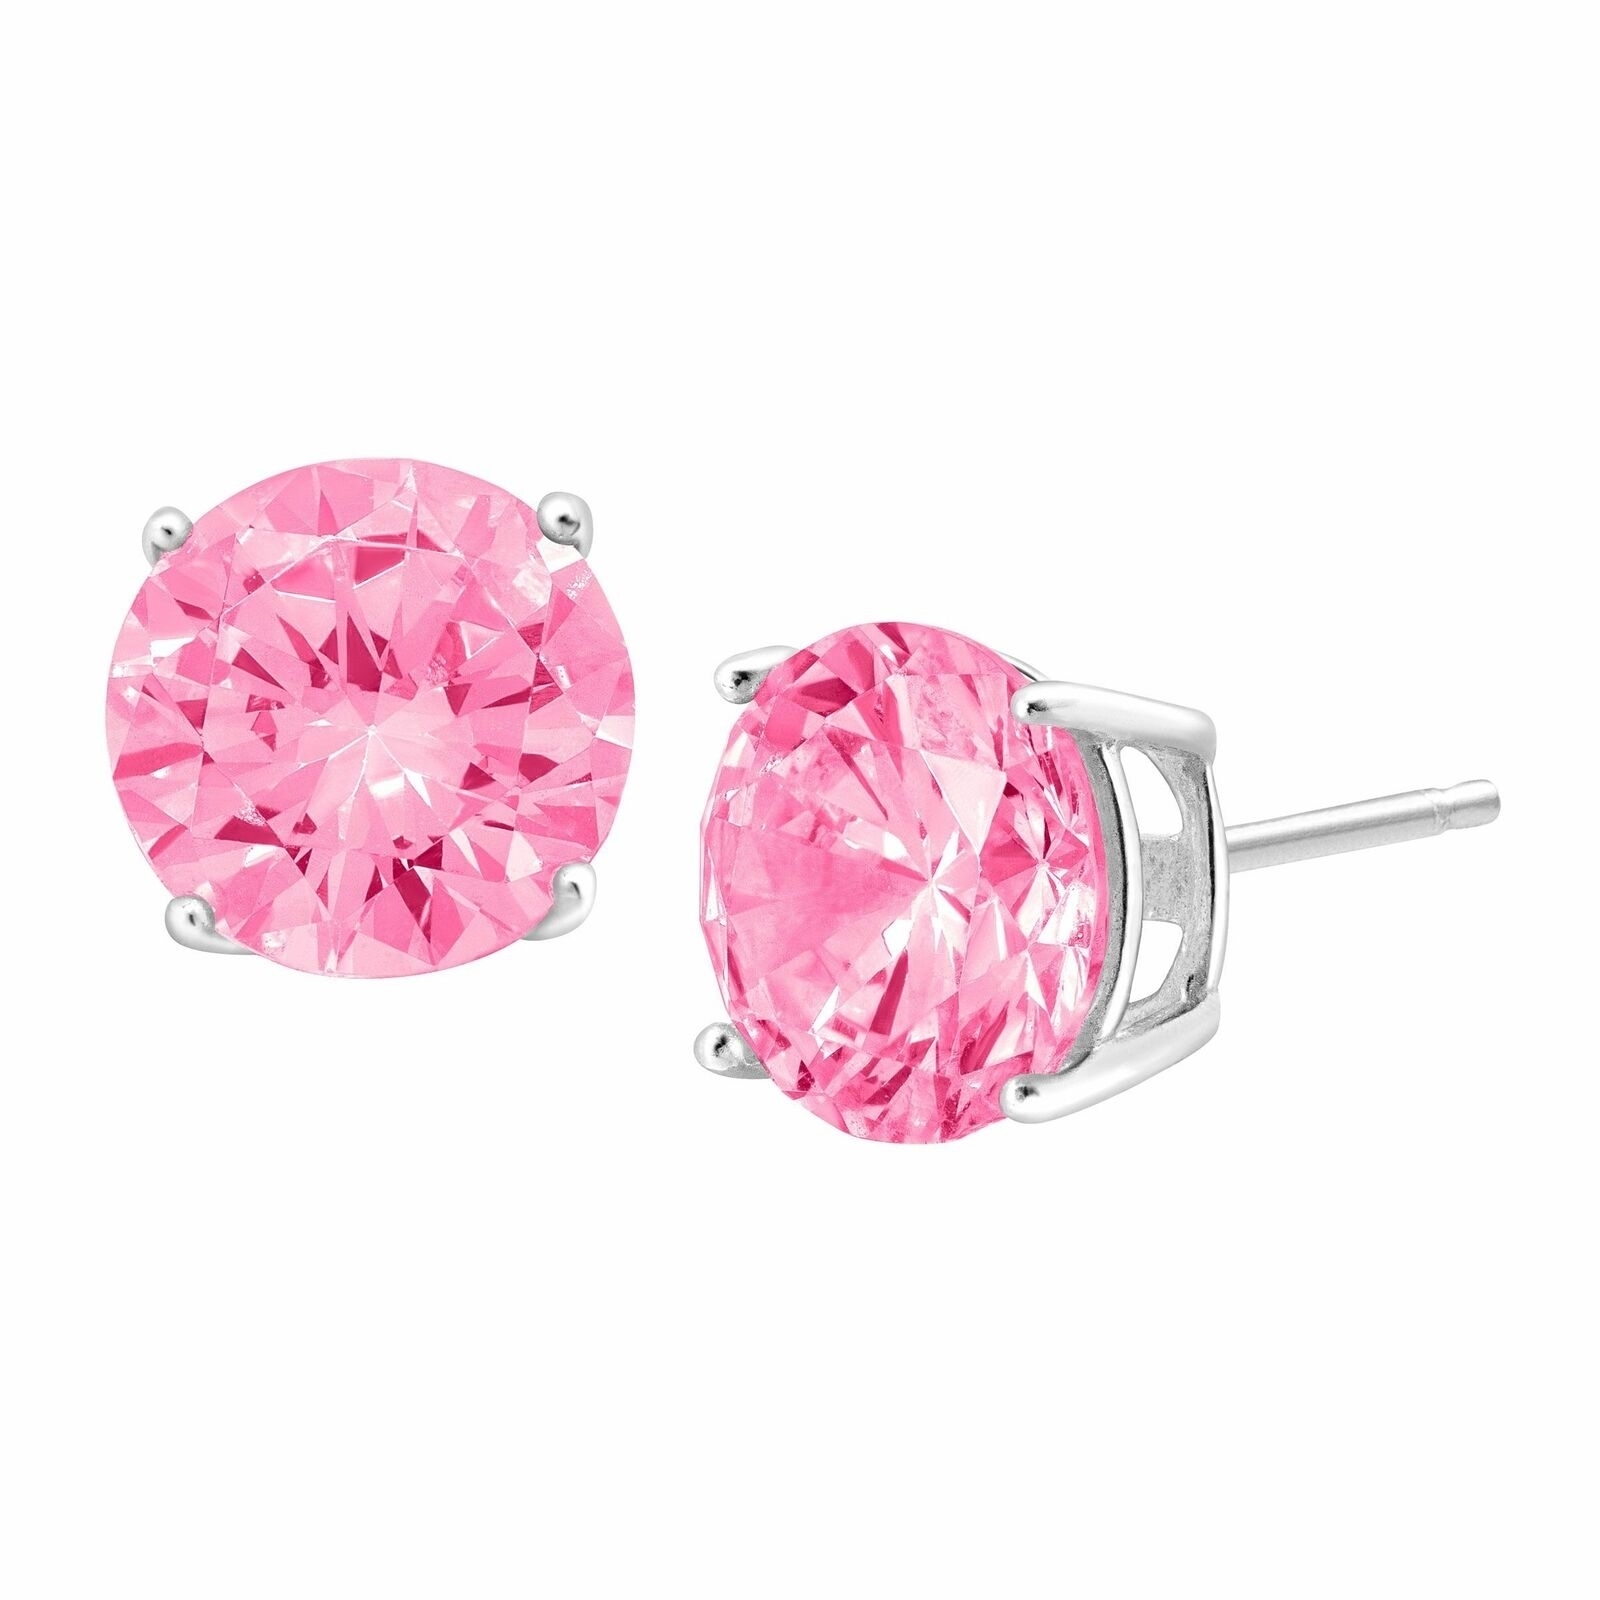 925 2.00 Cttw Genuine Pink Sapphire Gemstone Studs